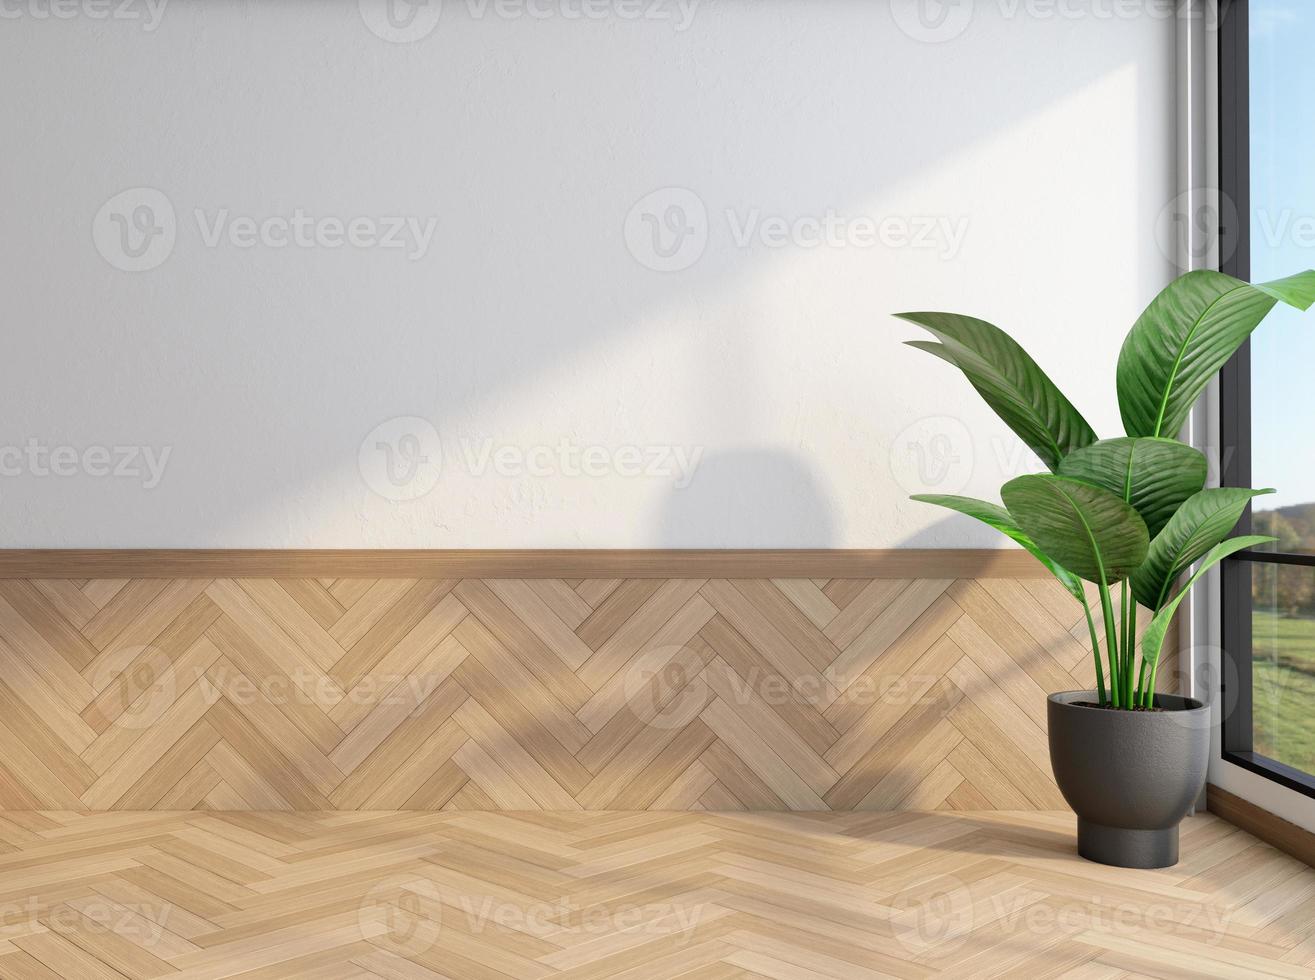 quarto vazio minimalista com parede branca e piso de madeira. renderização em 3D foto